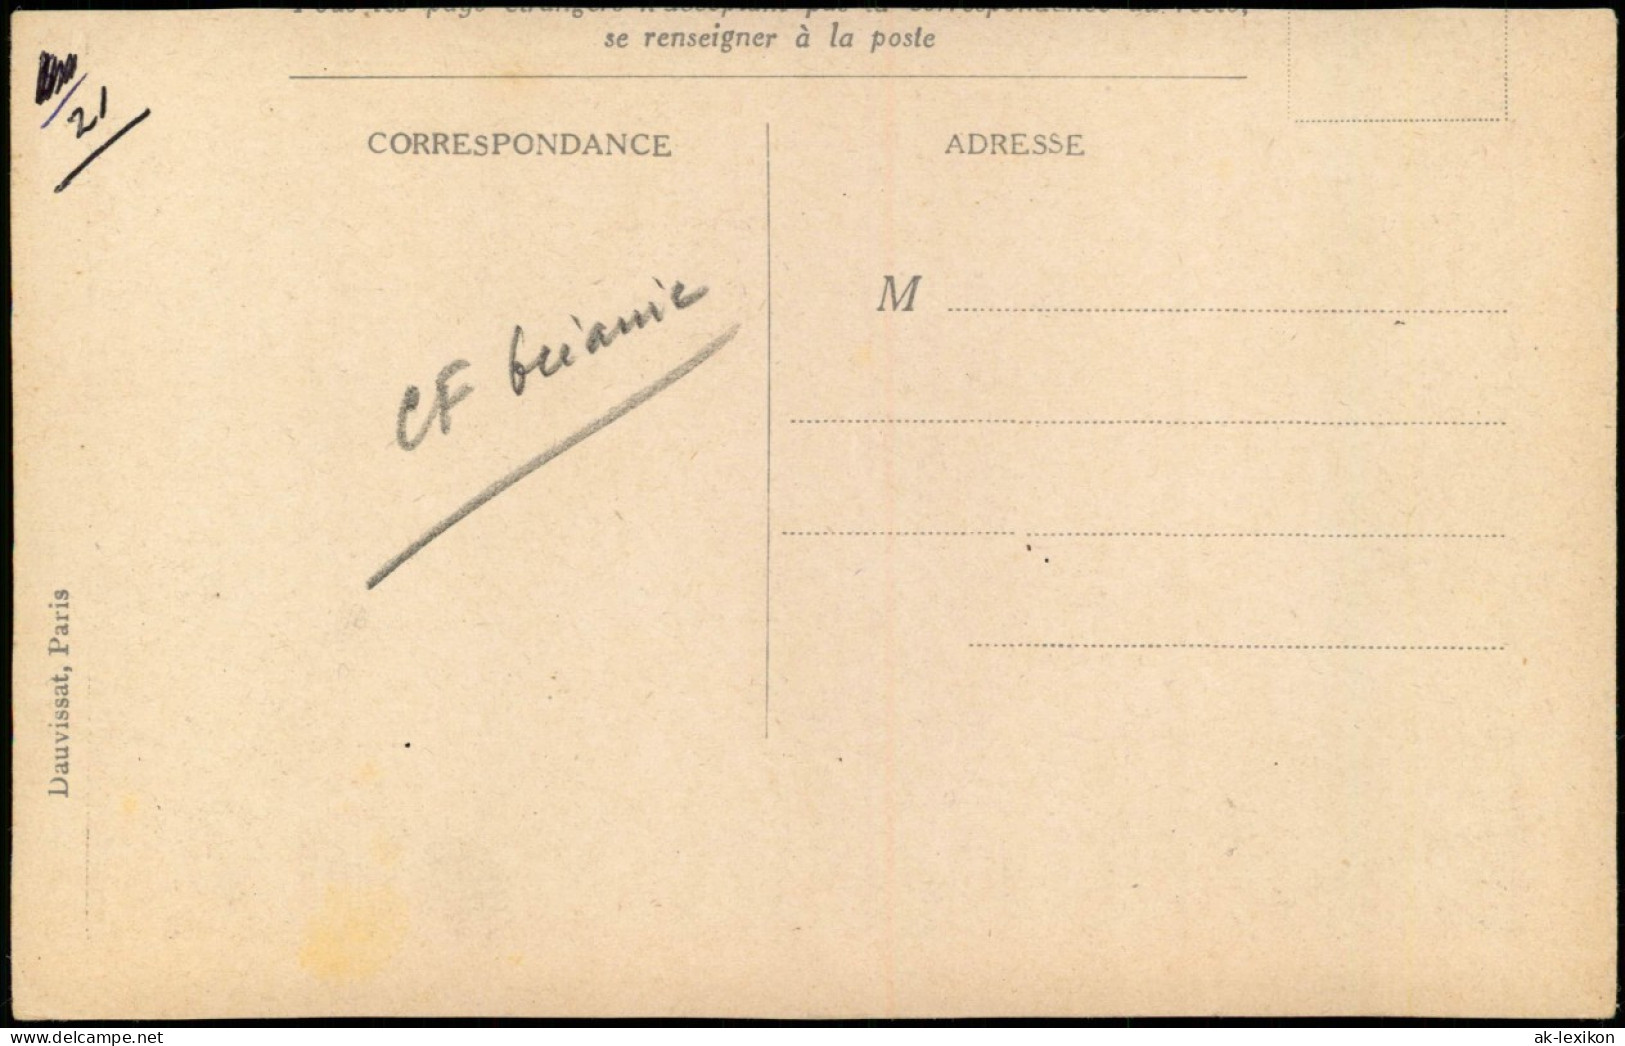 Französisch Polynesien PAYSAGE DE RAIATEA (lles De La Société).   1912 - Polynésie Française